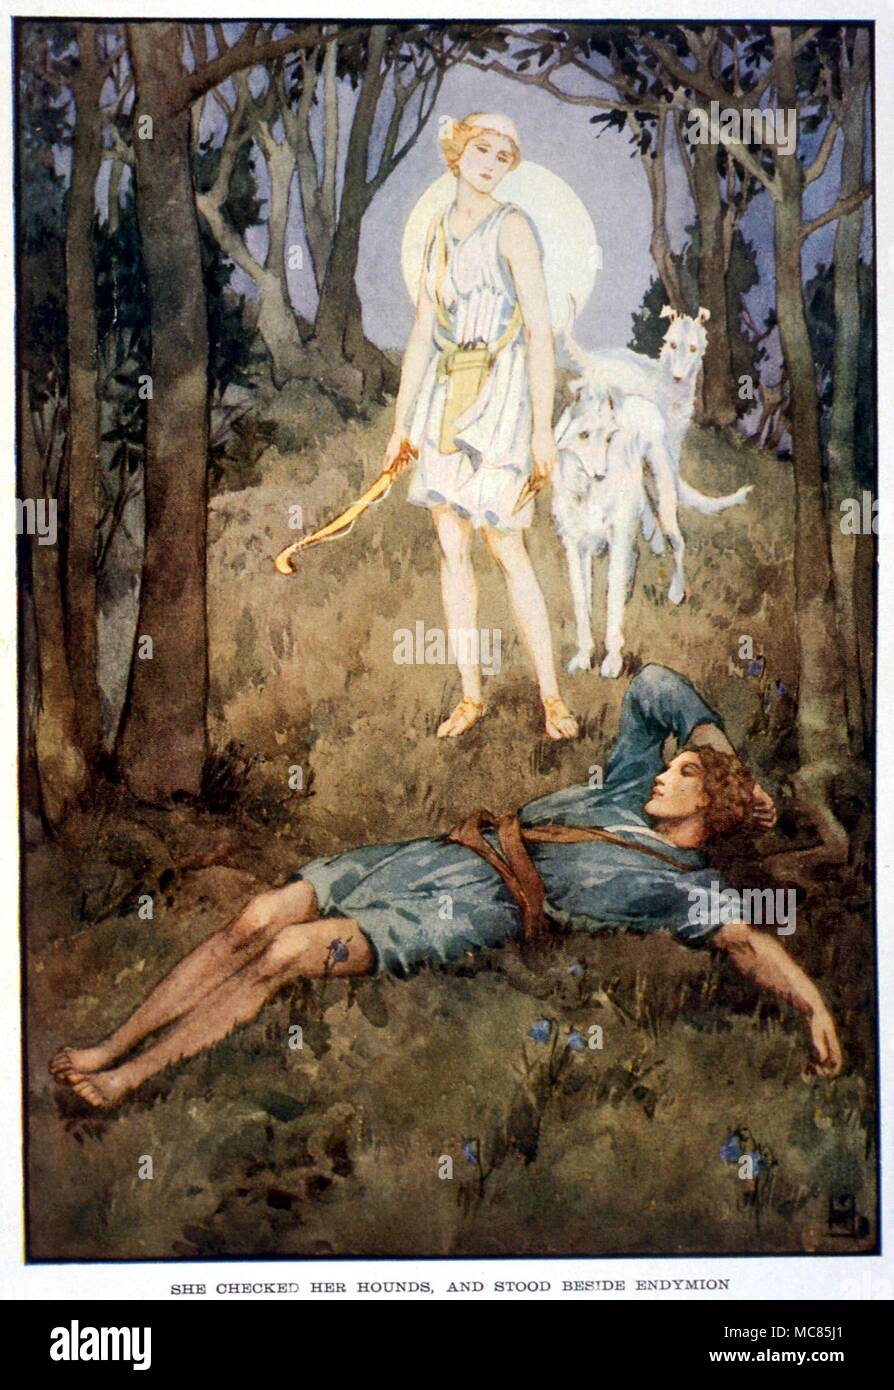 La mitologia greca. La dea Luna, Diana, cadere in amore con il pastore a pelo, Endimione. Illustrazione da Helen Stratton, 1915, per "un libro di miti" Foto Stock